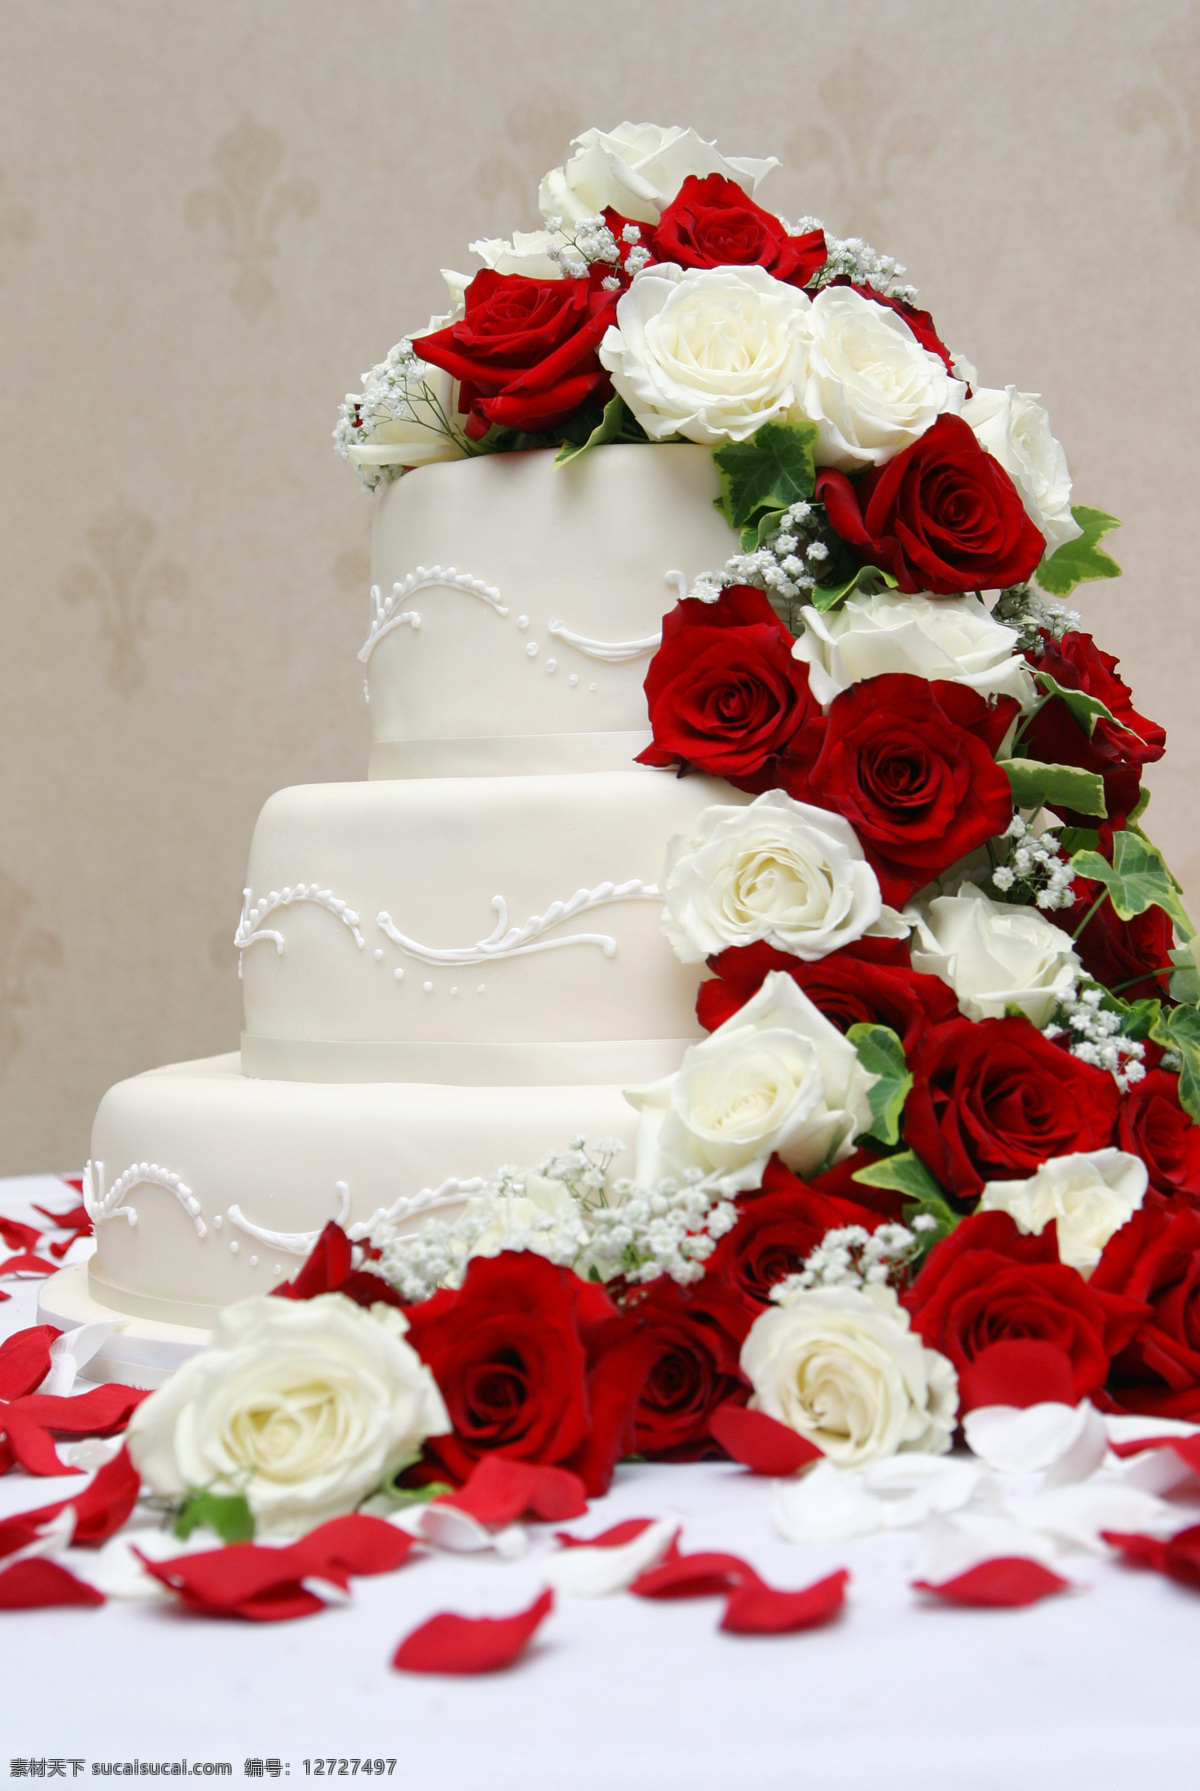 结婚 蛋糕 玫瑰花 婚礼蛋糕 鲜花 花朵 温馨浪漫 花瓣 其他类别 餐饮美食 白色